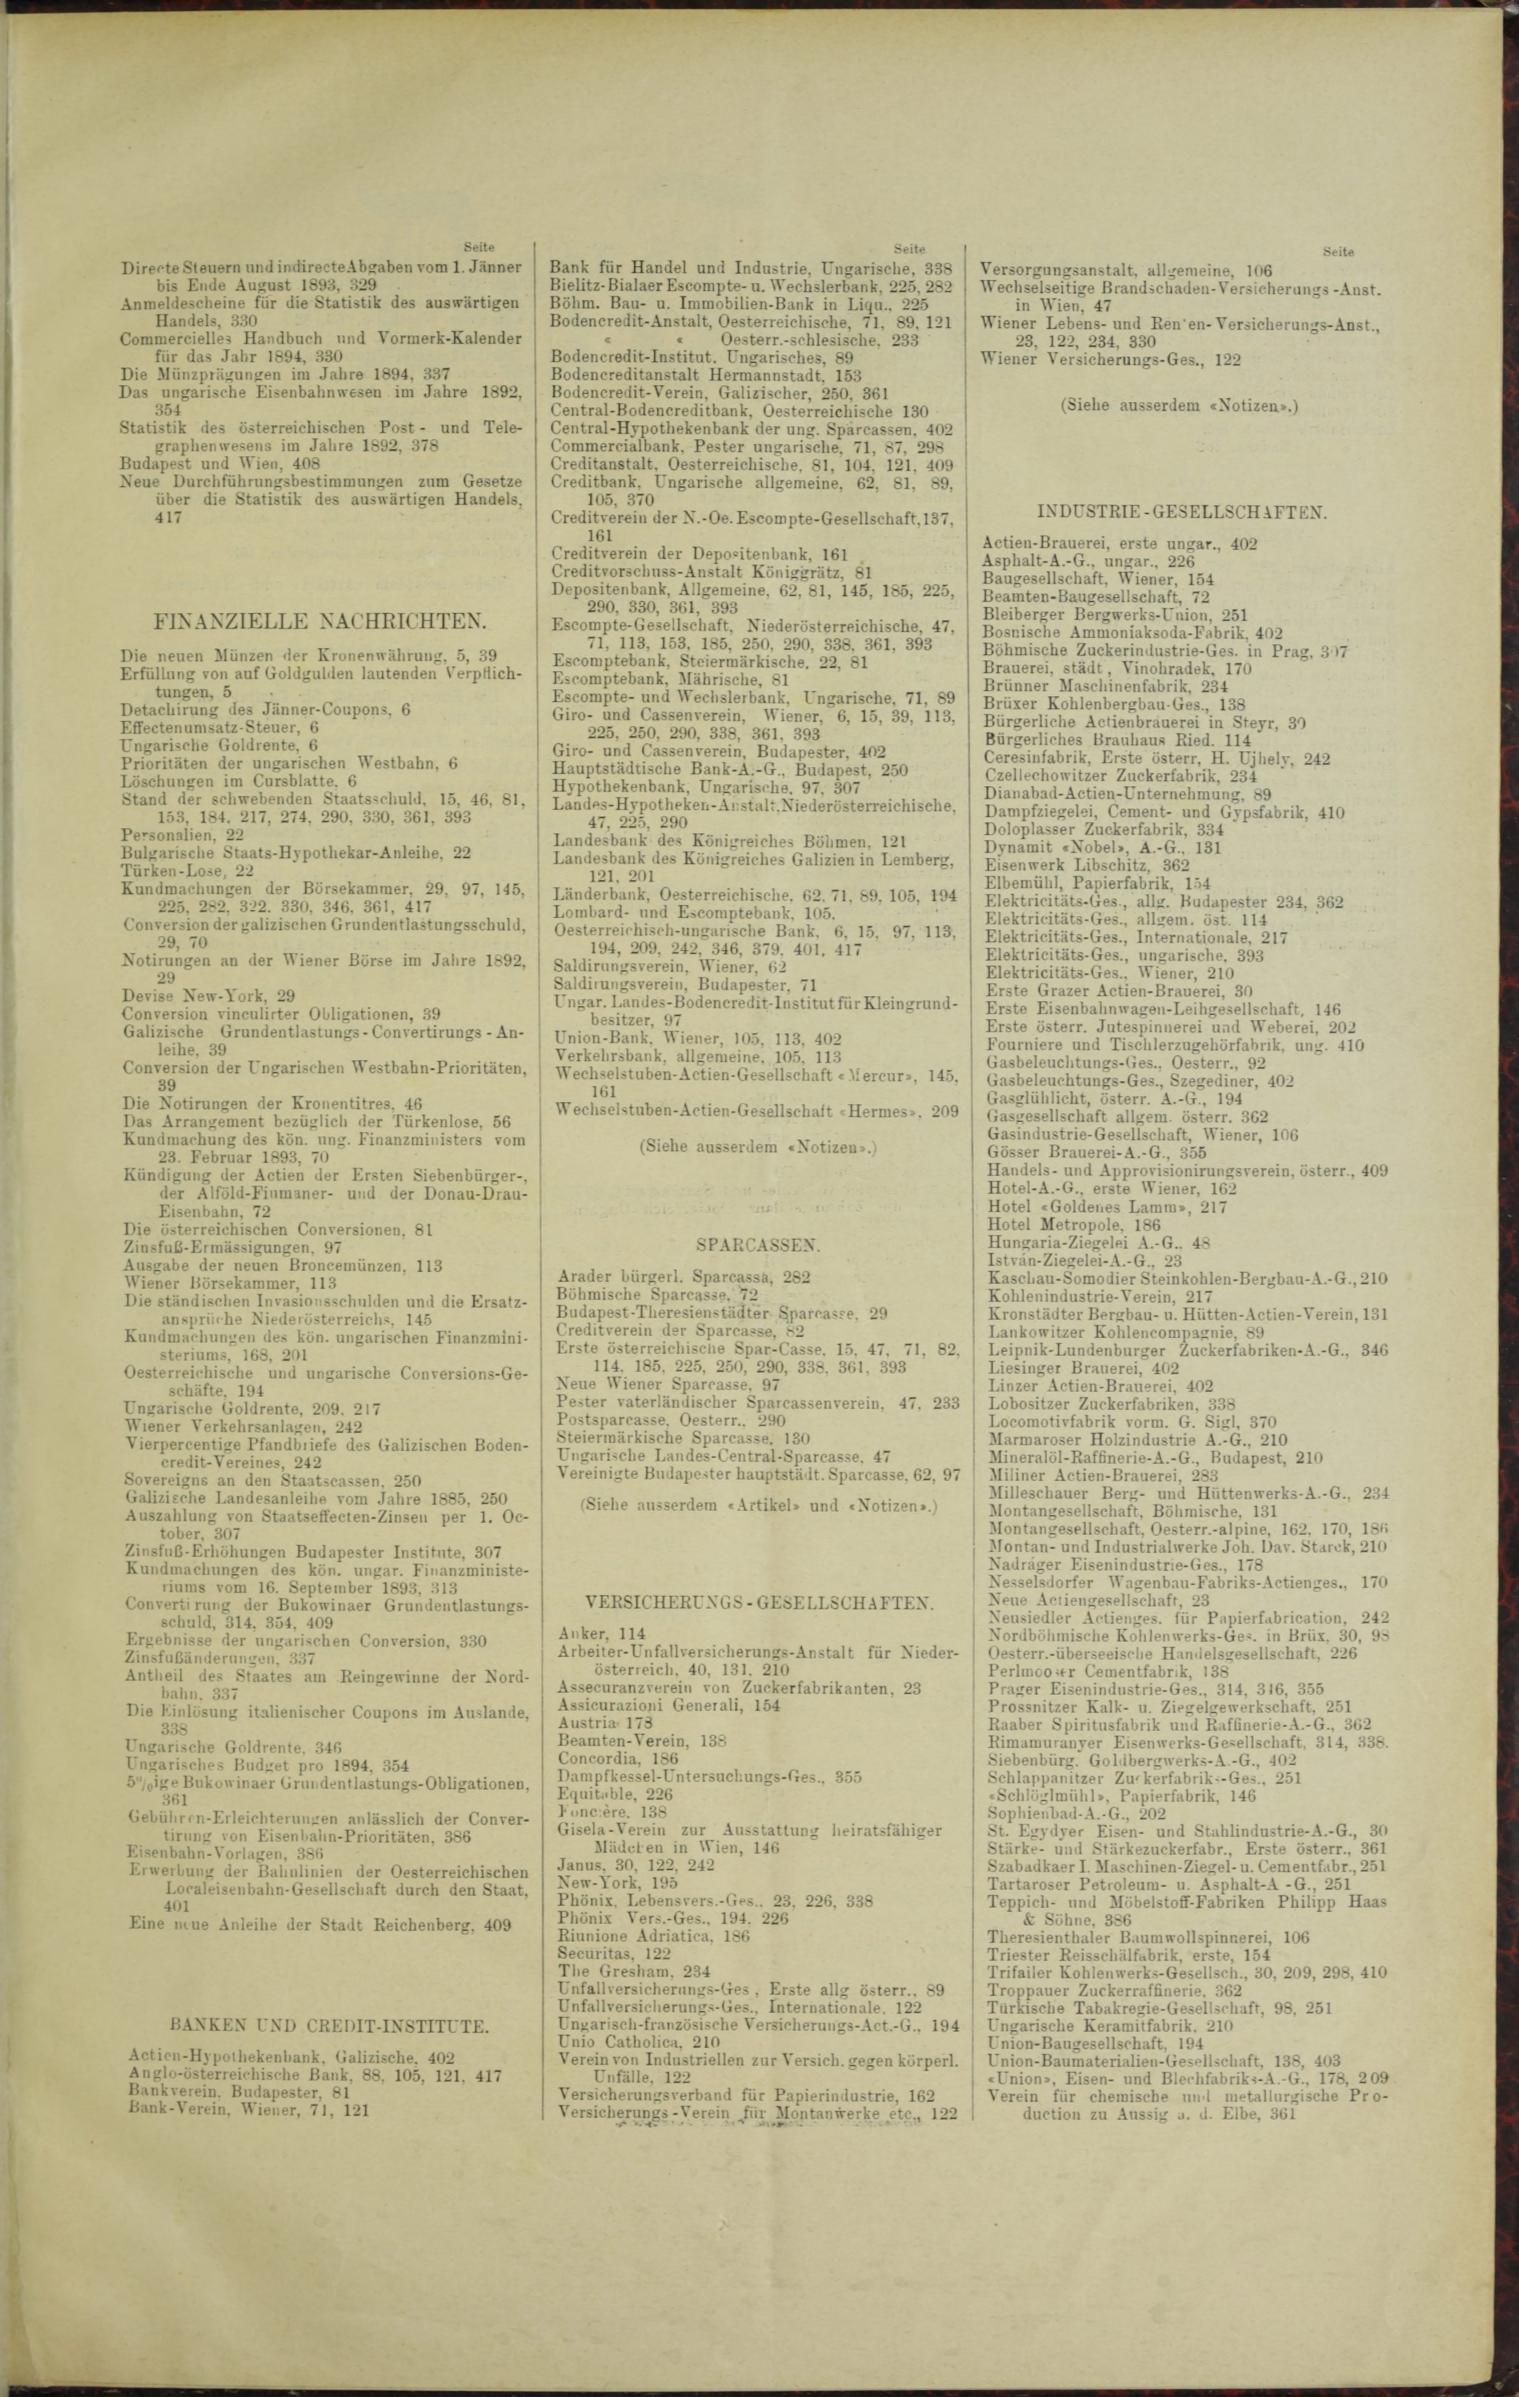 Der Tresor 19.01.1893 - Seite 11